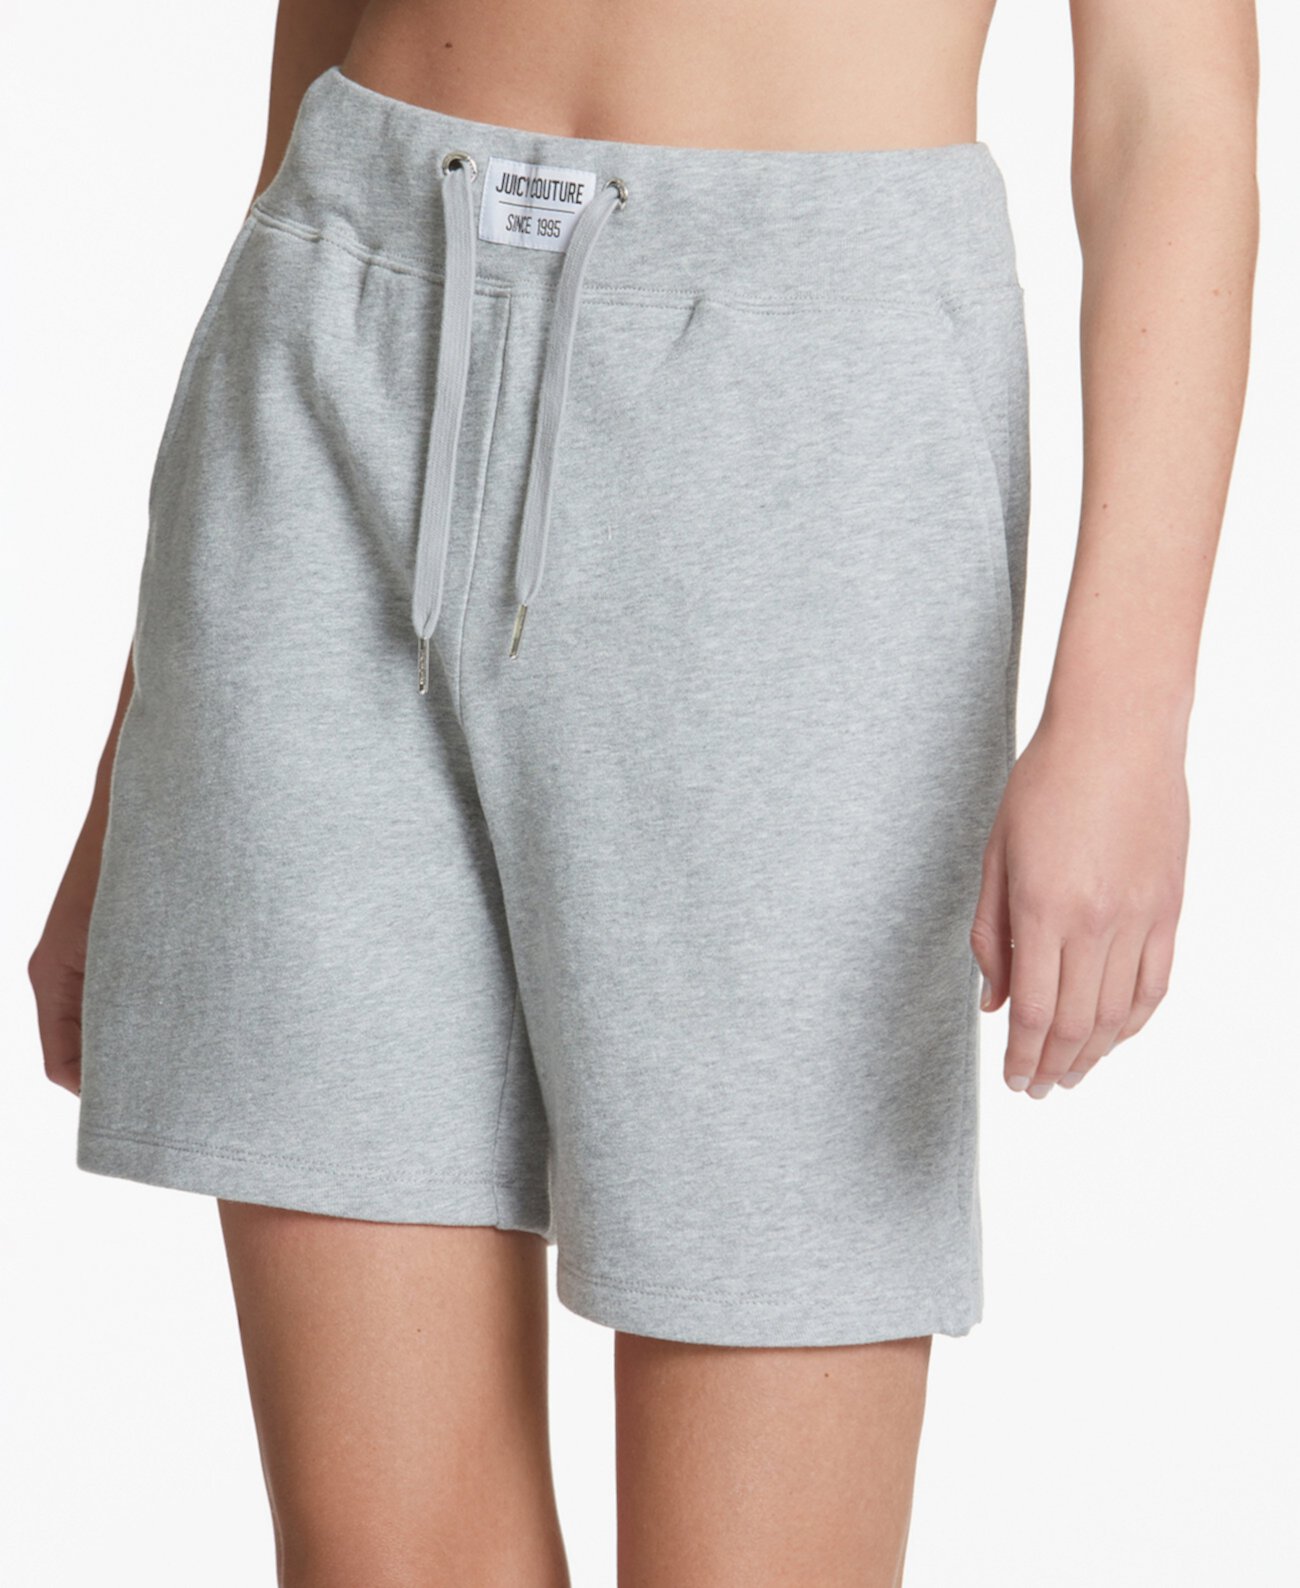 Женские шорты с высокой талией и нашивкой-логотипом Juicy Couture